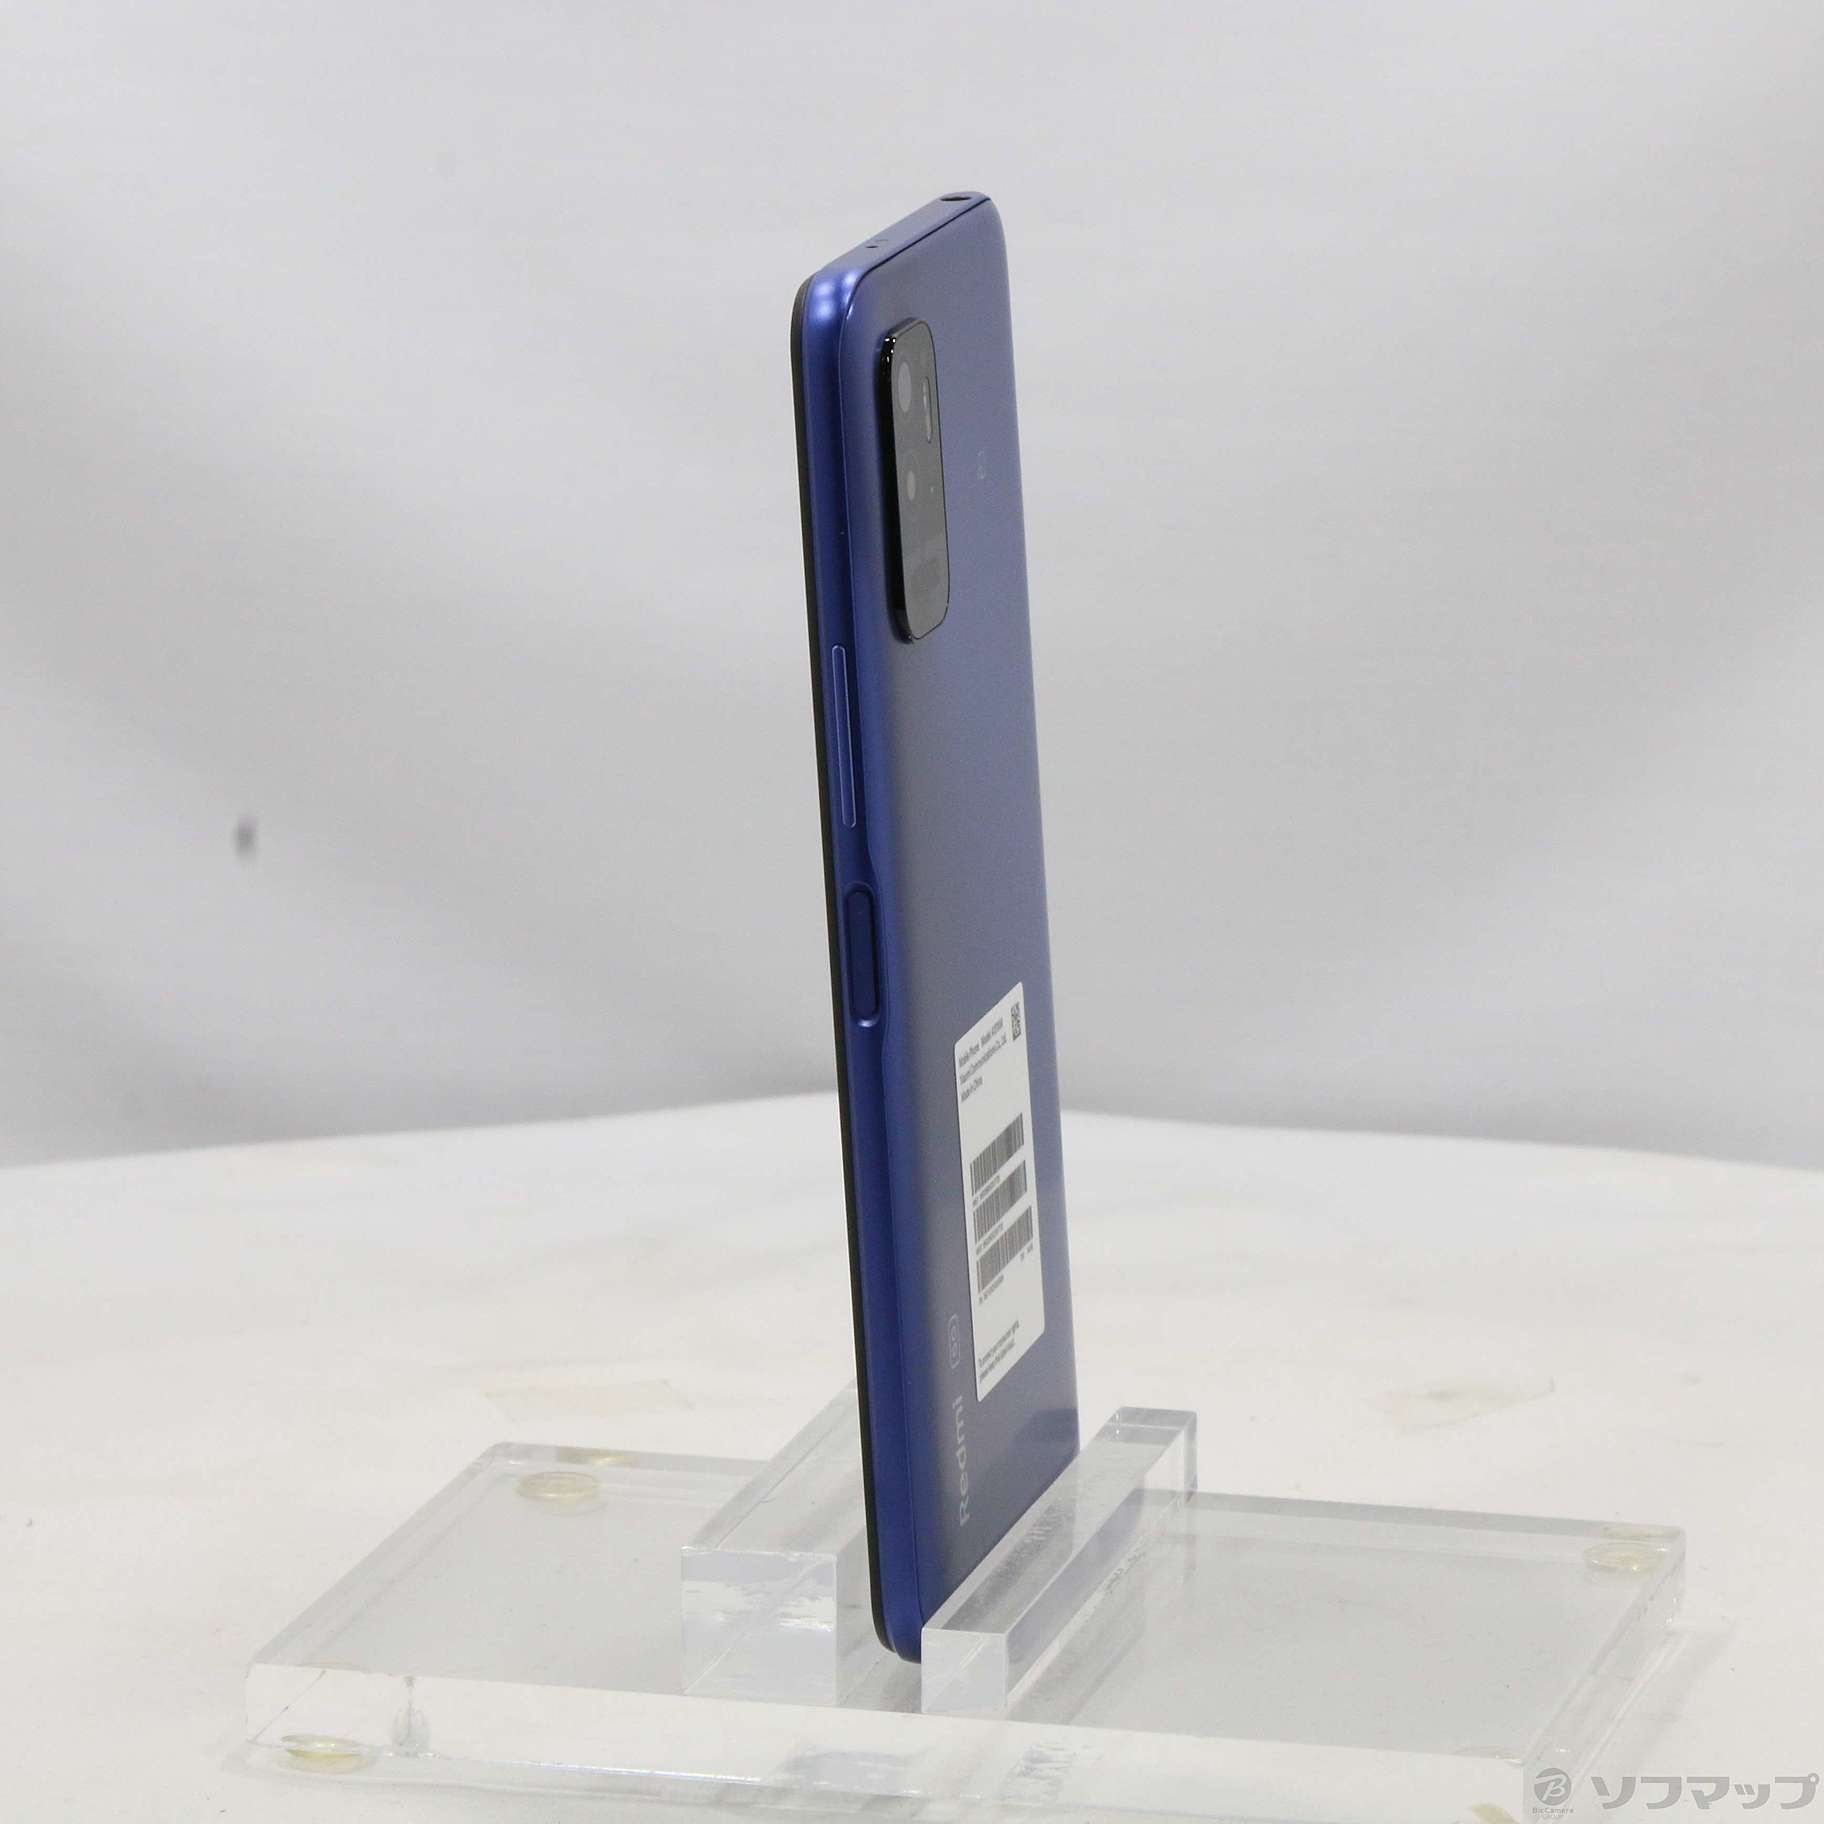 中古】Redmi Note 10T 64GB ナイトタイムブルー XMSAC1 SoftBank